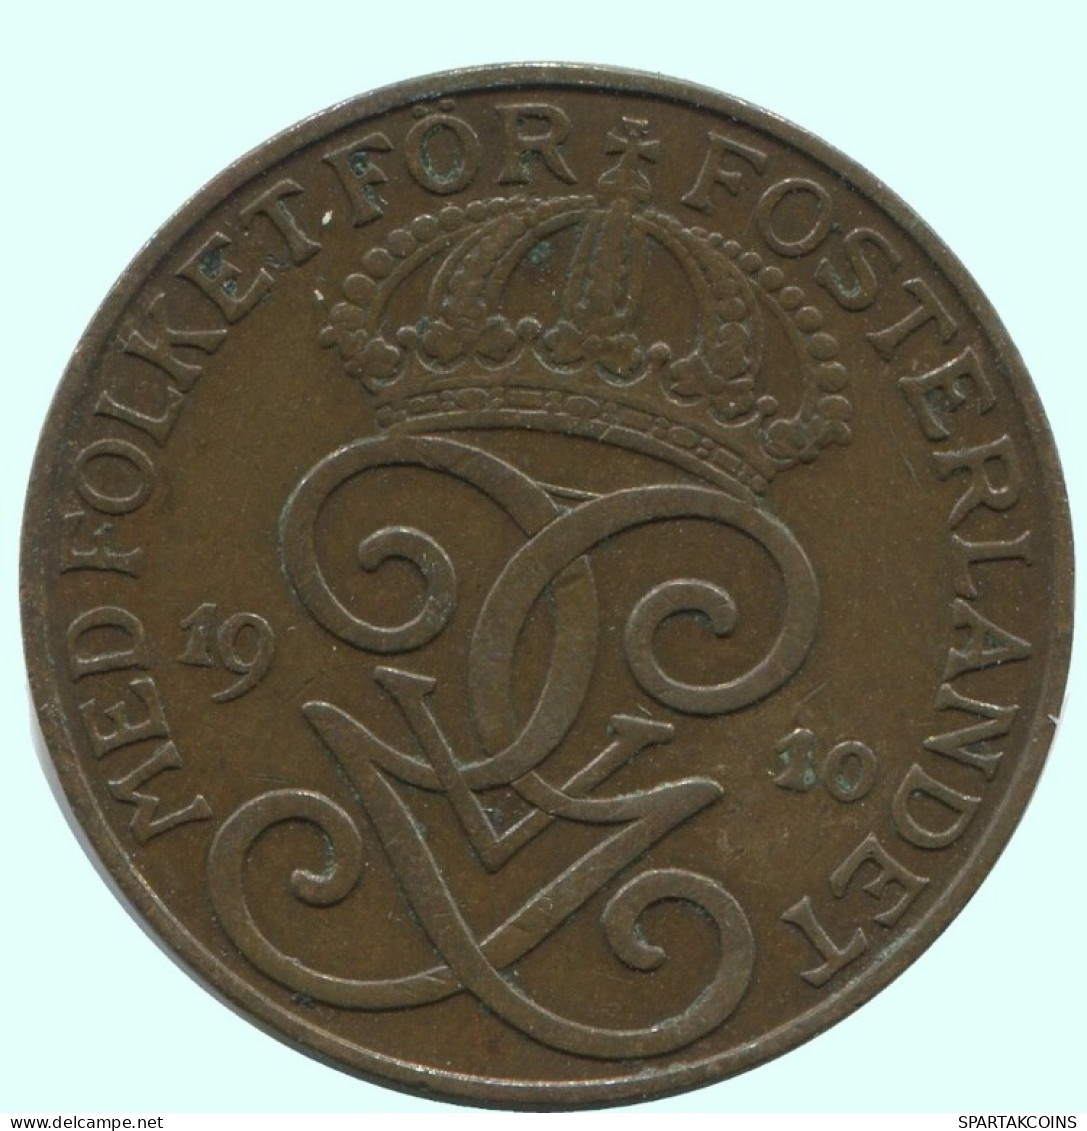 2 ORE 1910 SUECIA SWEDEN Moneda #AC816.2.E.A - Suecia